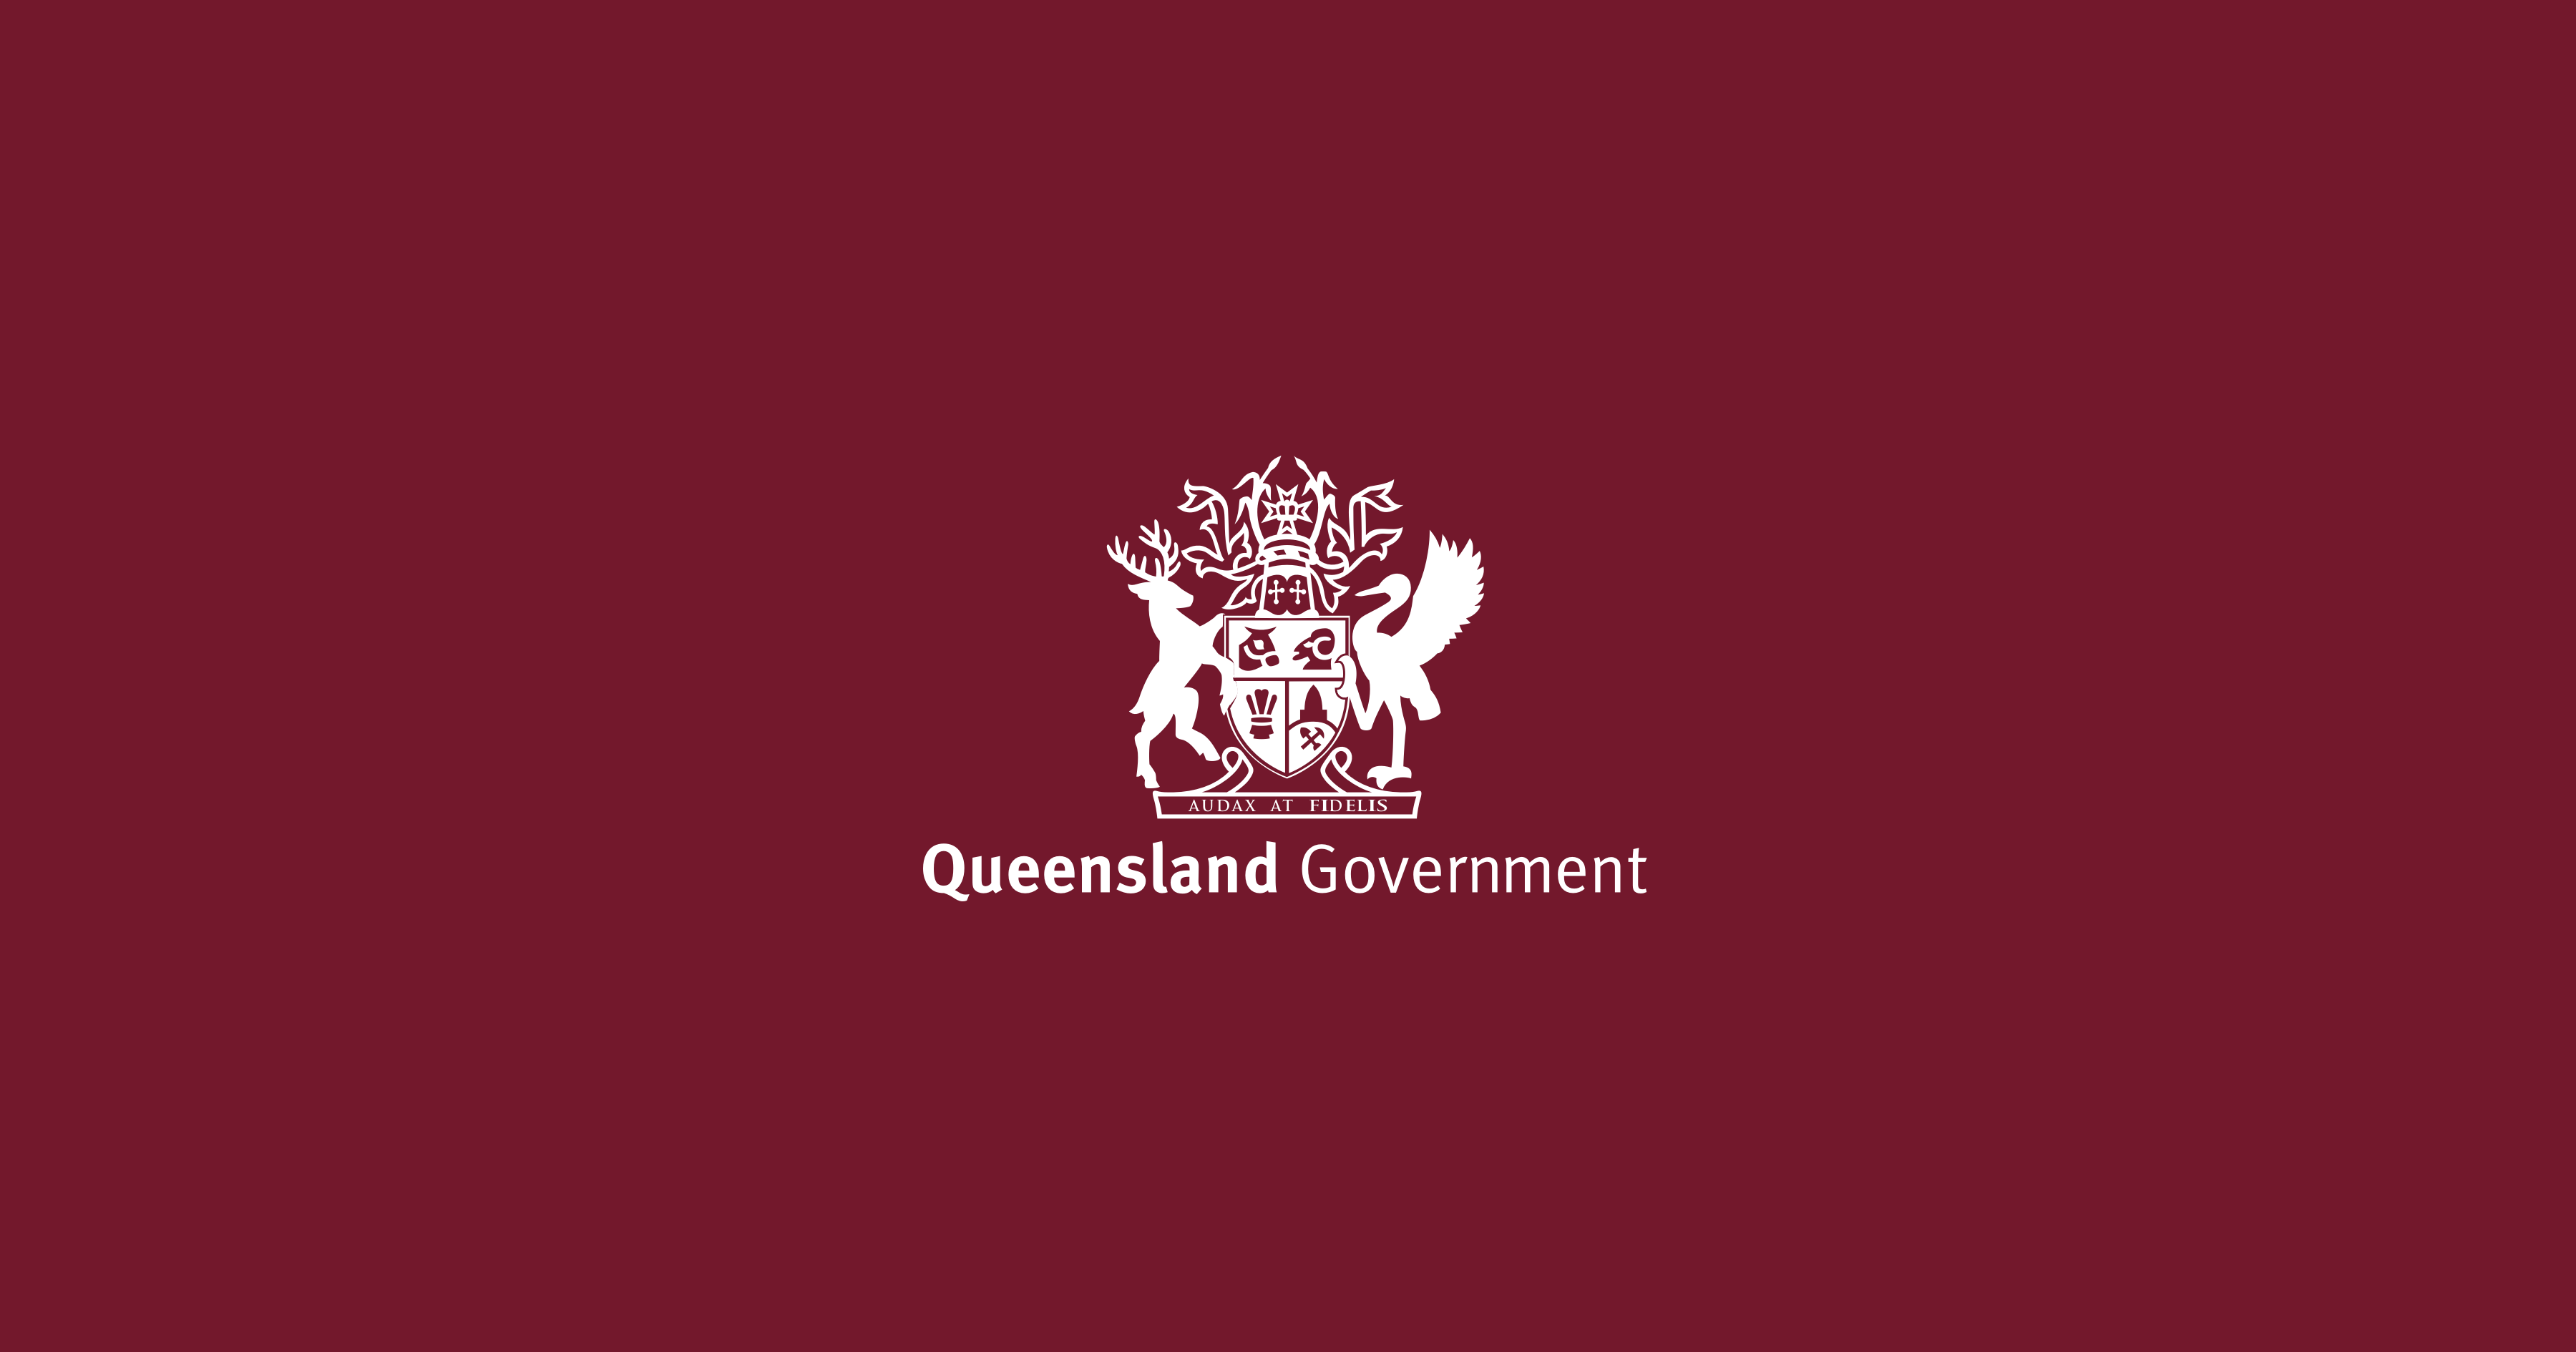 www.qld.gov.au